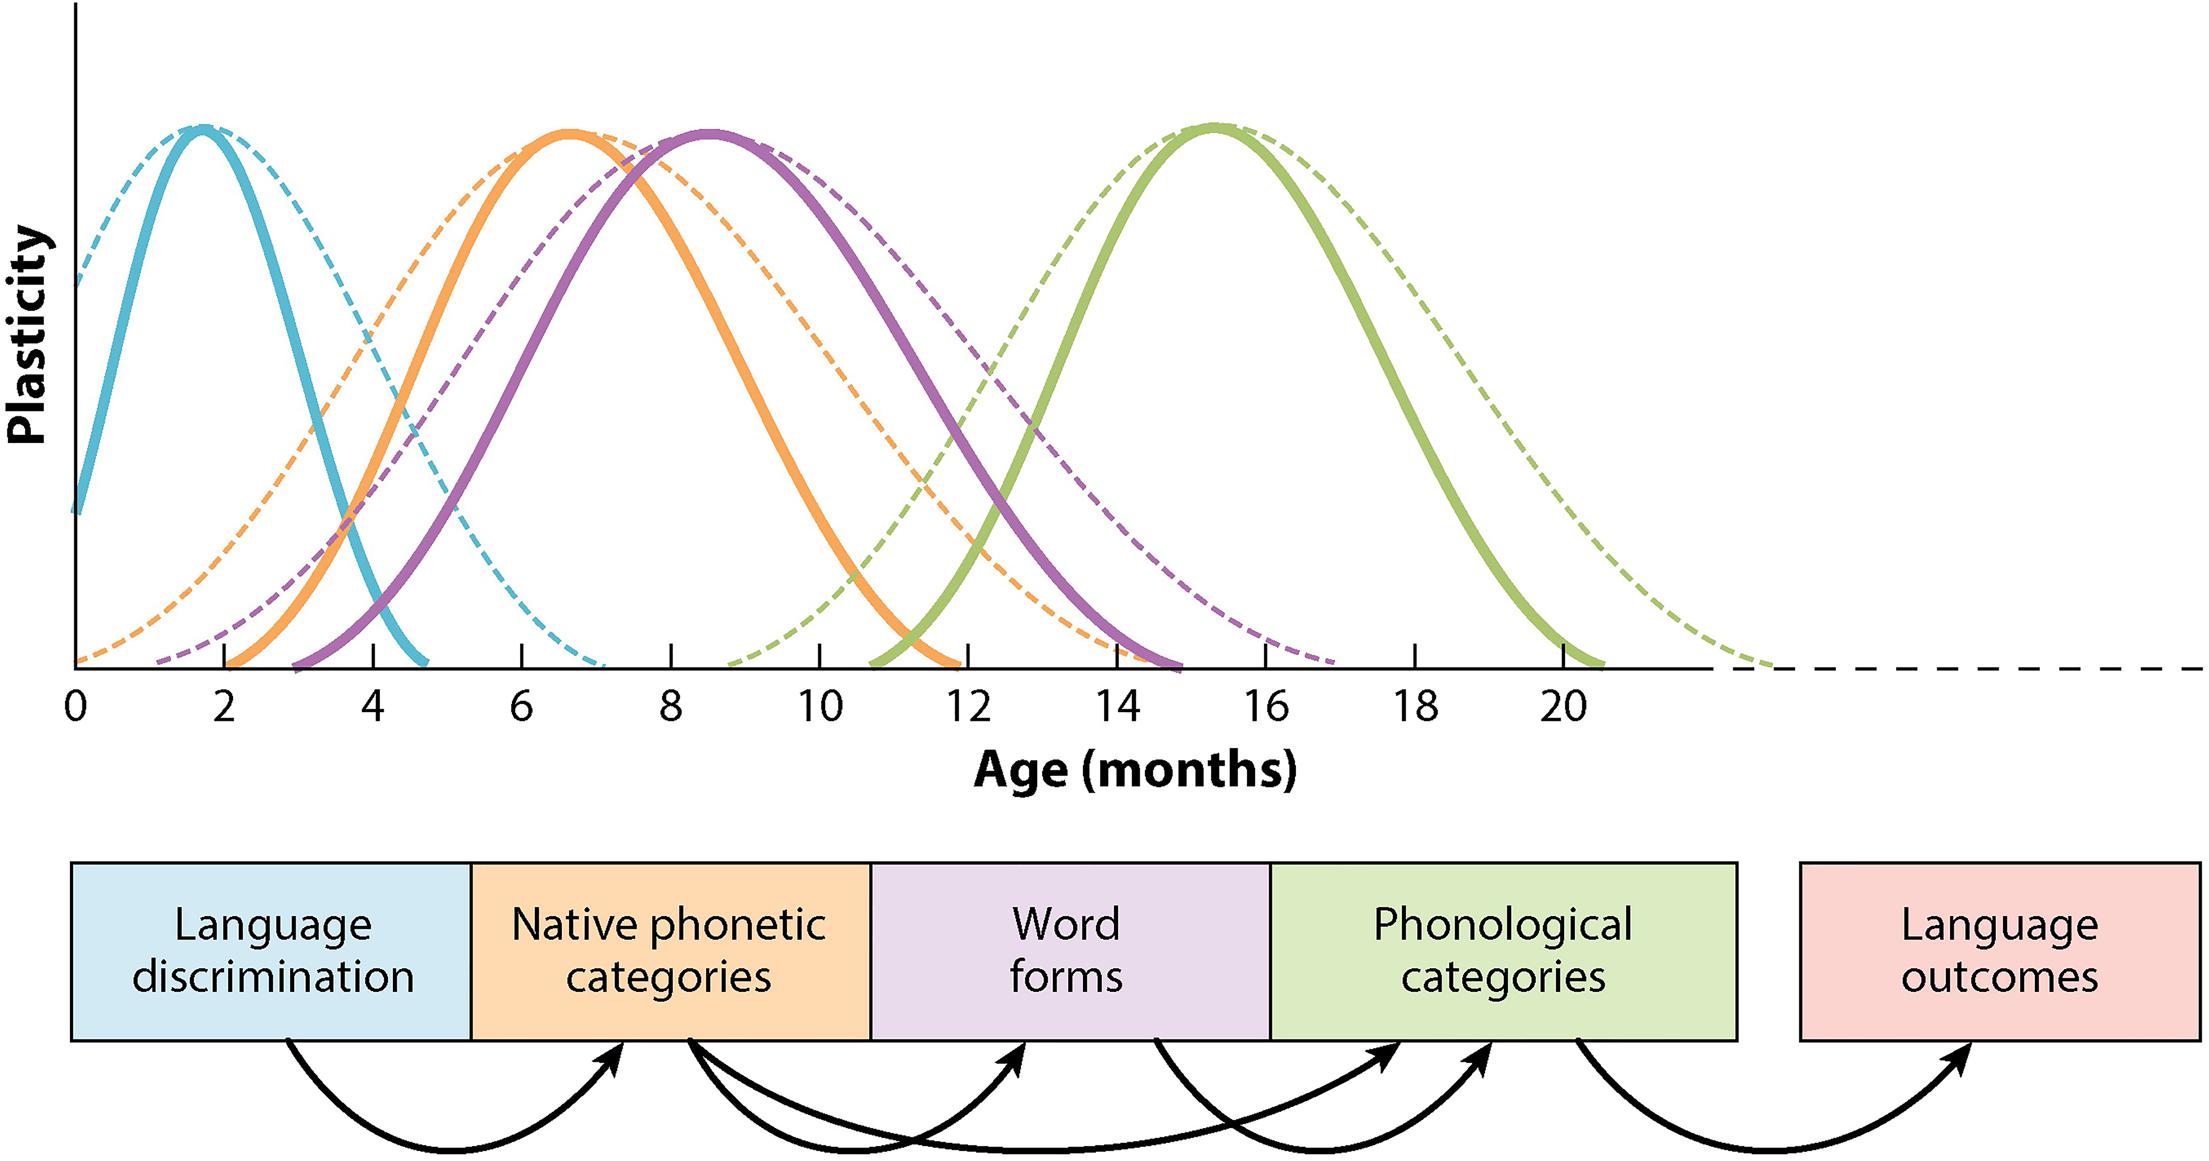 critical age hypothesis second language acquisition